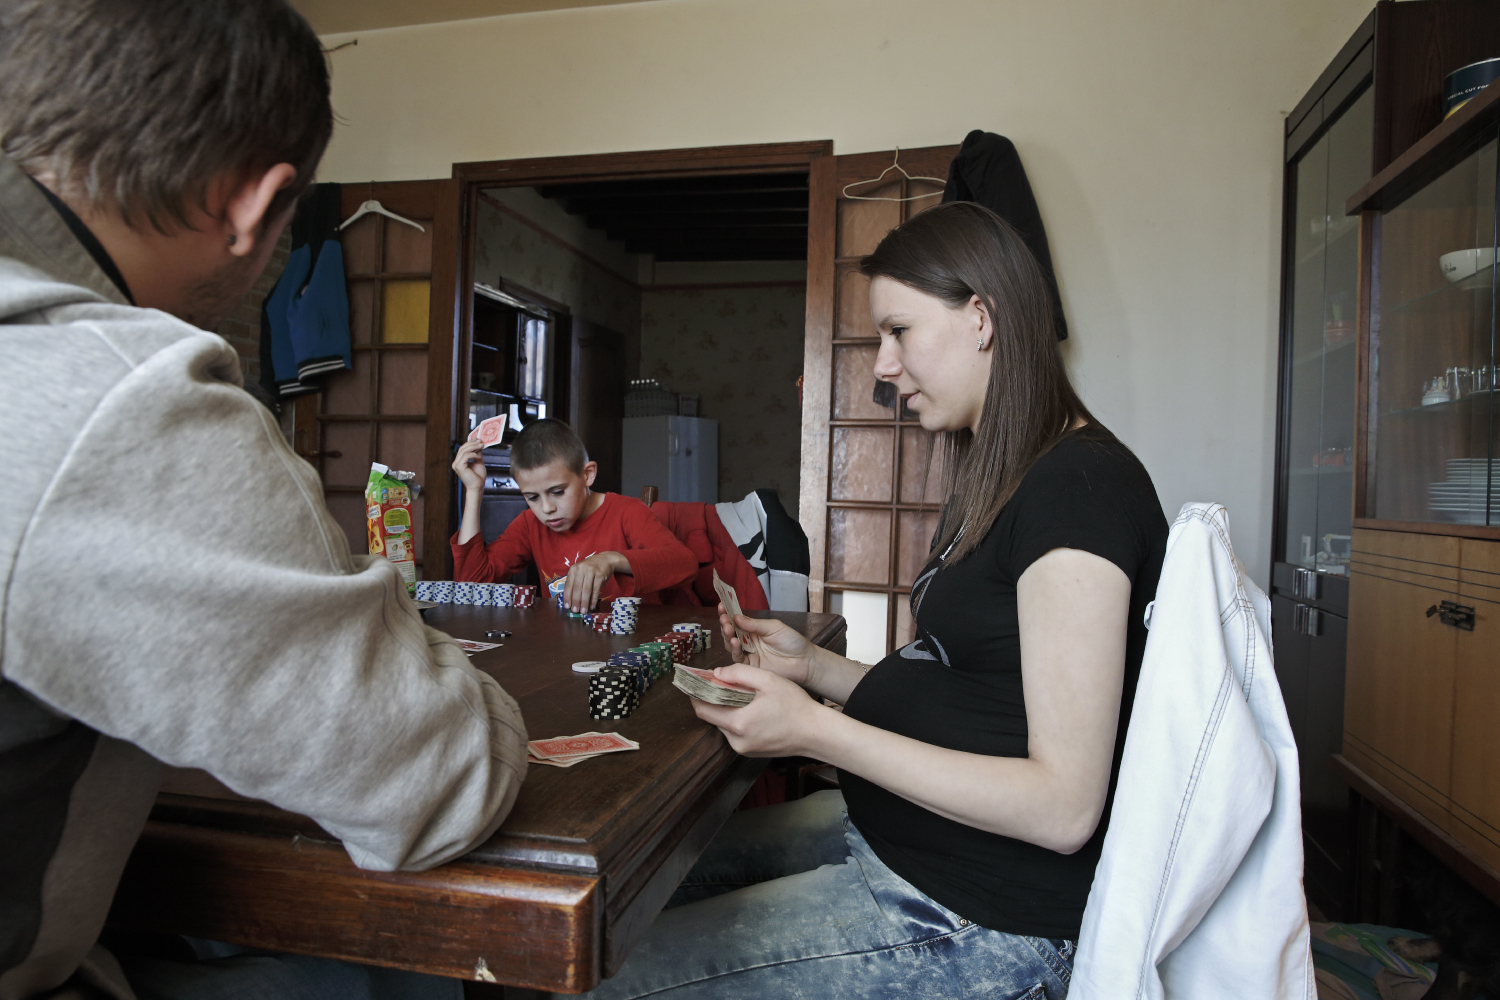 A Rumigny, village de 370 habitants, il n'y a pas grand-chose à faire pour la jeunesse locale. Xavier et Amélie passent la plupart de leur temps chez leur amis Mickael (18 ans) et Mattéo (11 ans), à jouer au poker. 